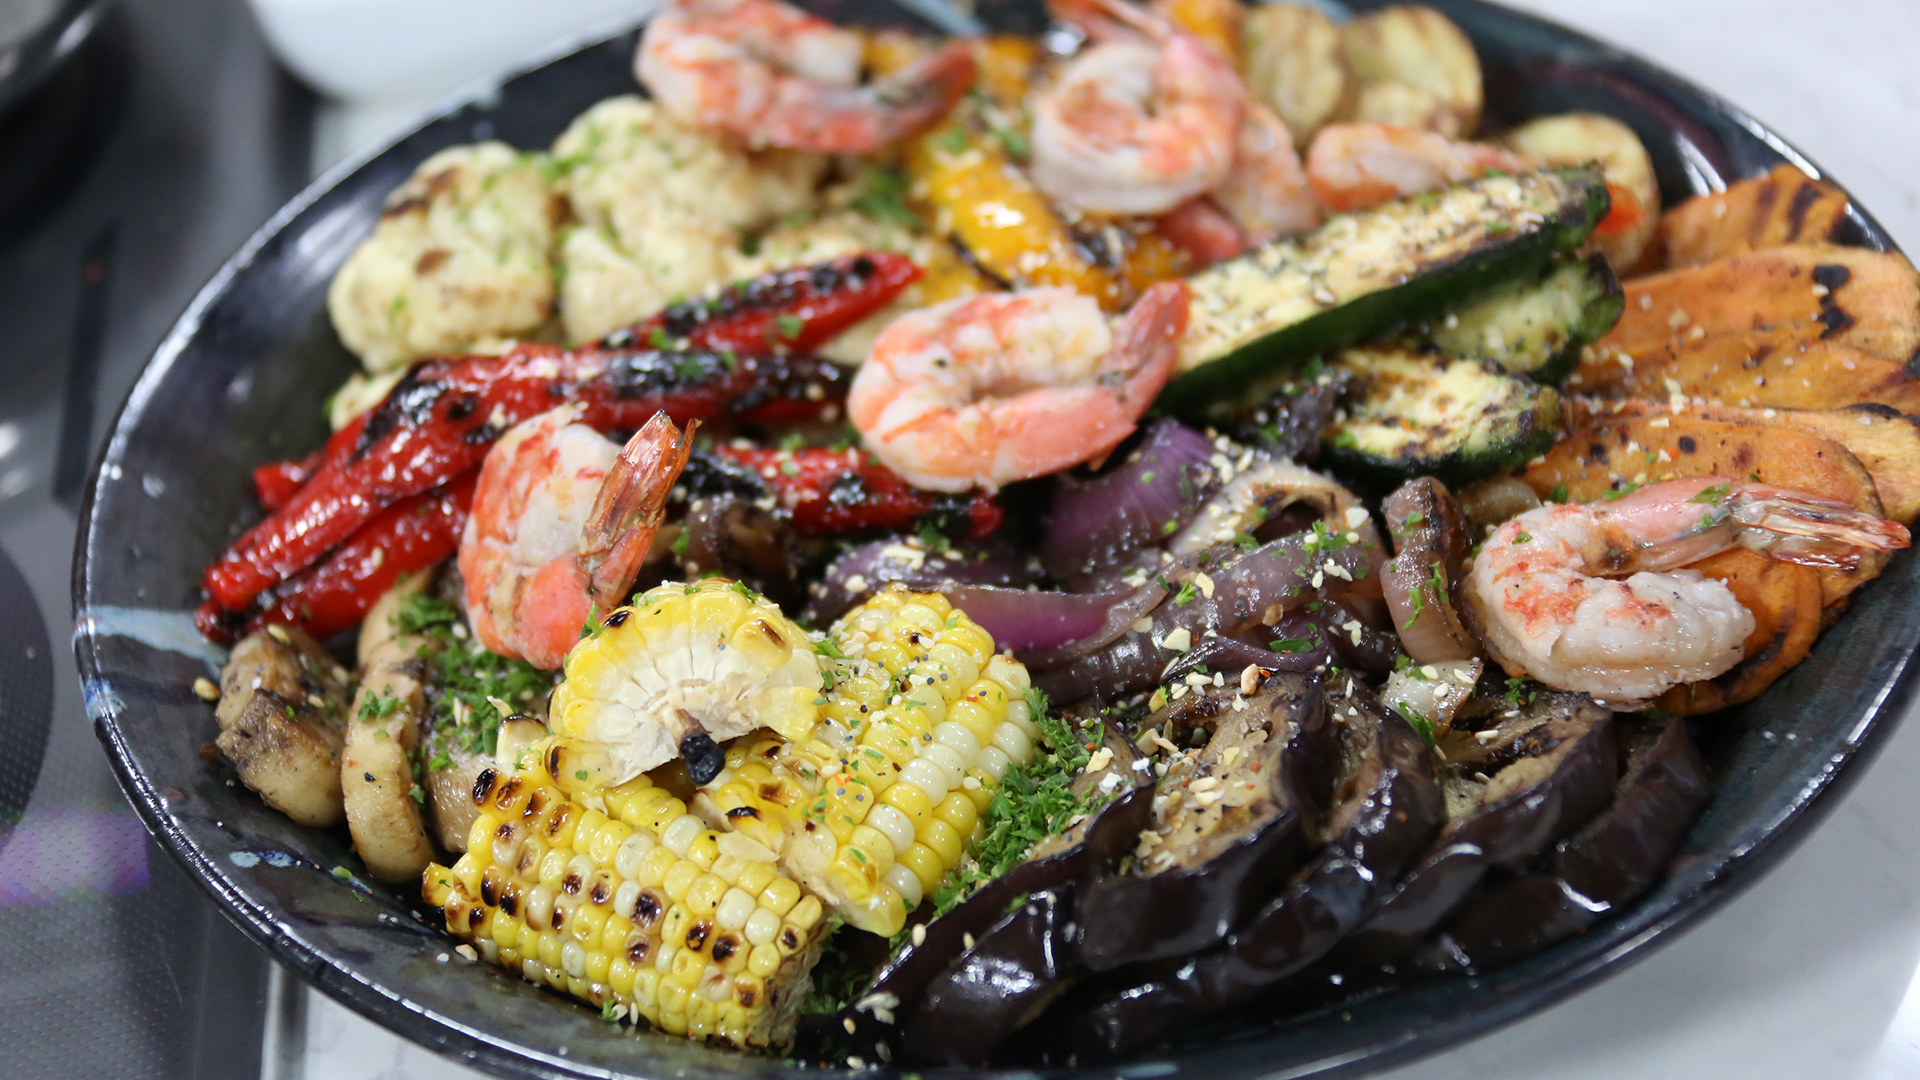 Grilled shrimp and vegetables